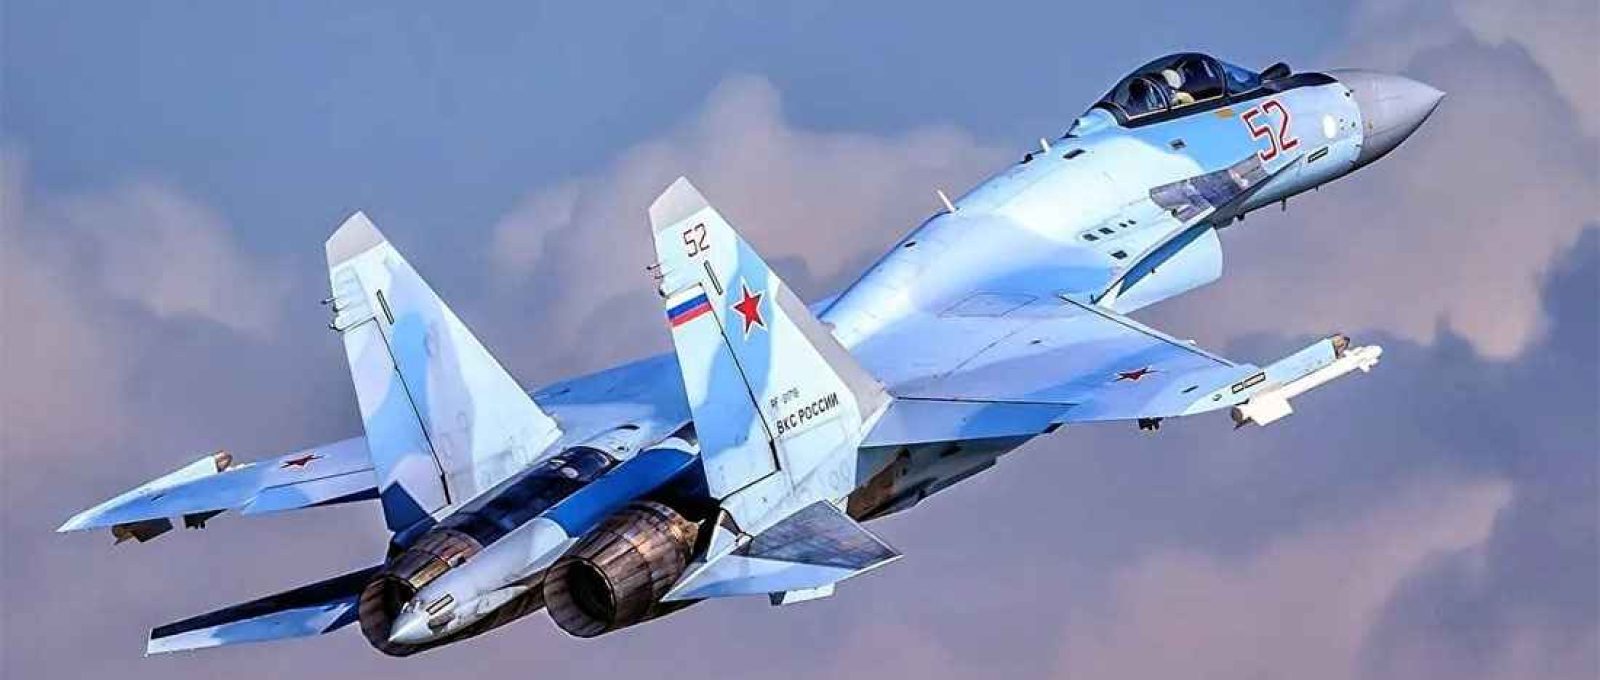 Caça Sukhoi Su-35 da Força Aérea russa (Creative Commons).